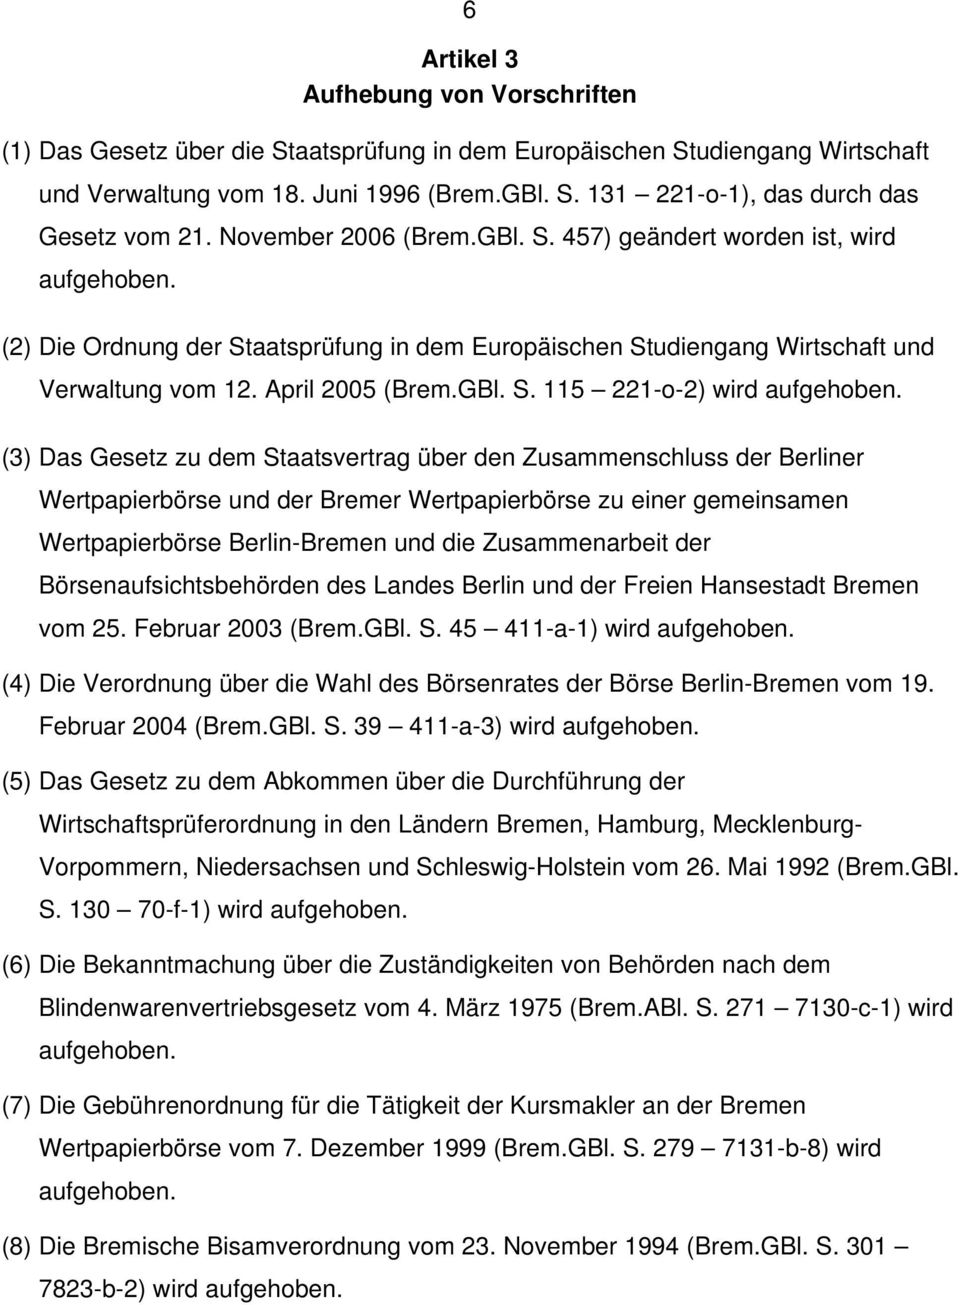 (3) Das Gesetz zu dem Staatsvertrag über den Zusammenschluss der Berliner Wertpapierbörse und der Bremer Wertpapierbörse zu einer gemeinsamen Wertpapierbörse Berlin-Bremen und die Zusammenarbeit der